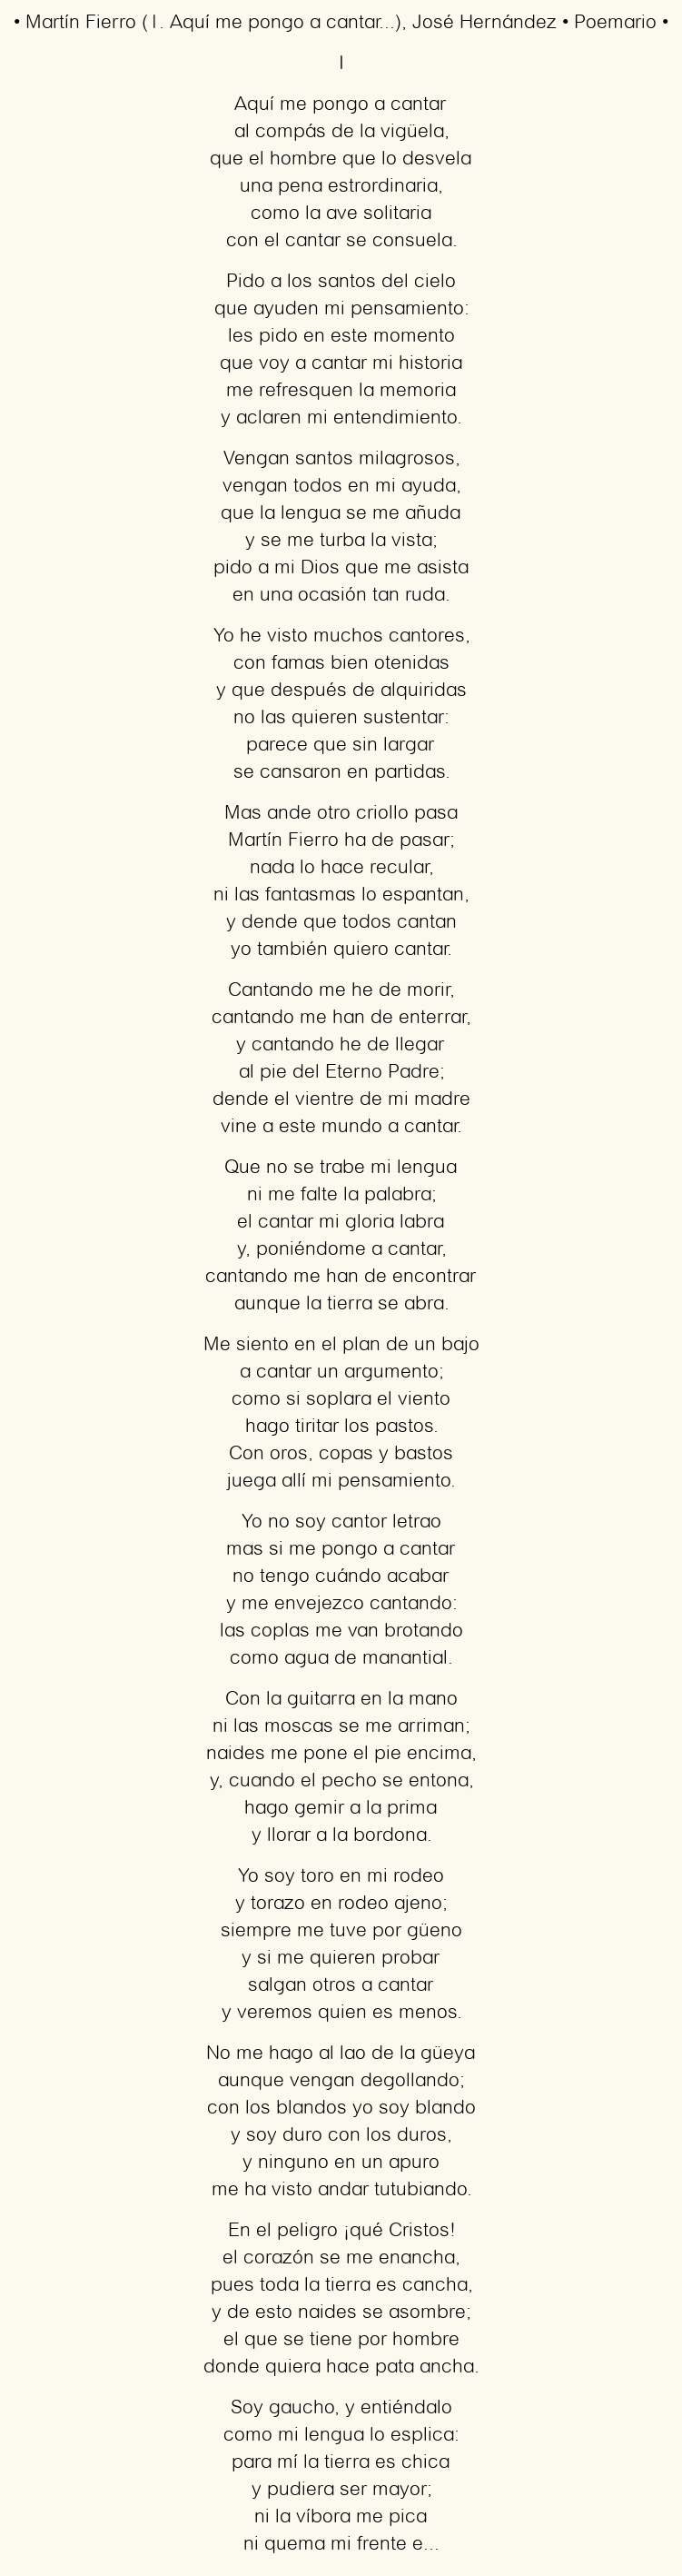 Imagen con el poema Martín Fierro (1. Aquí me pongo a cantar…), por José Hernández